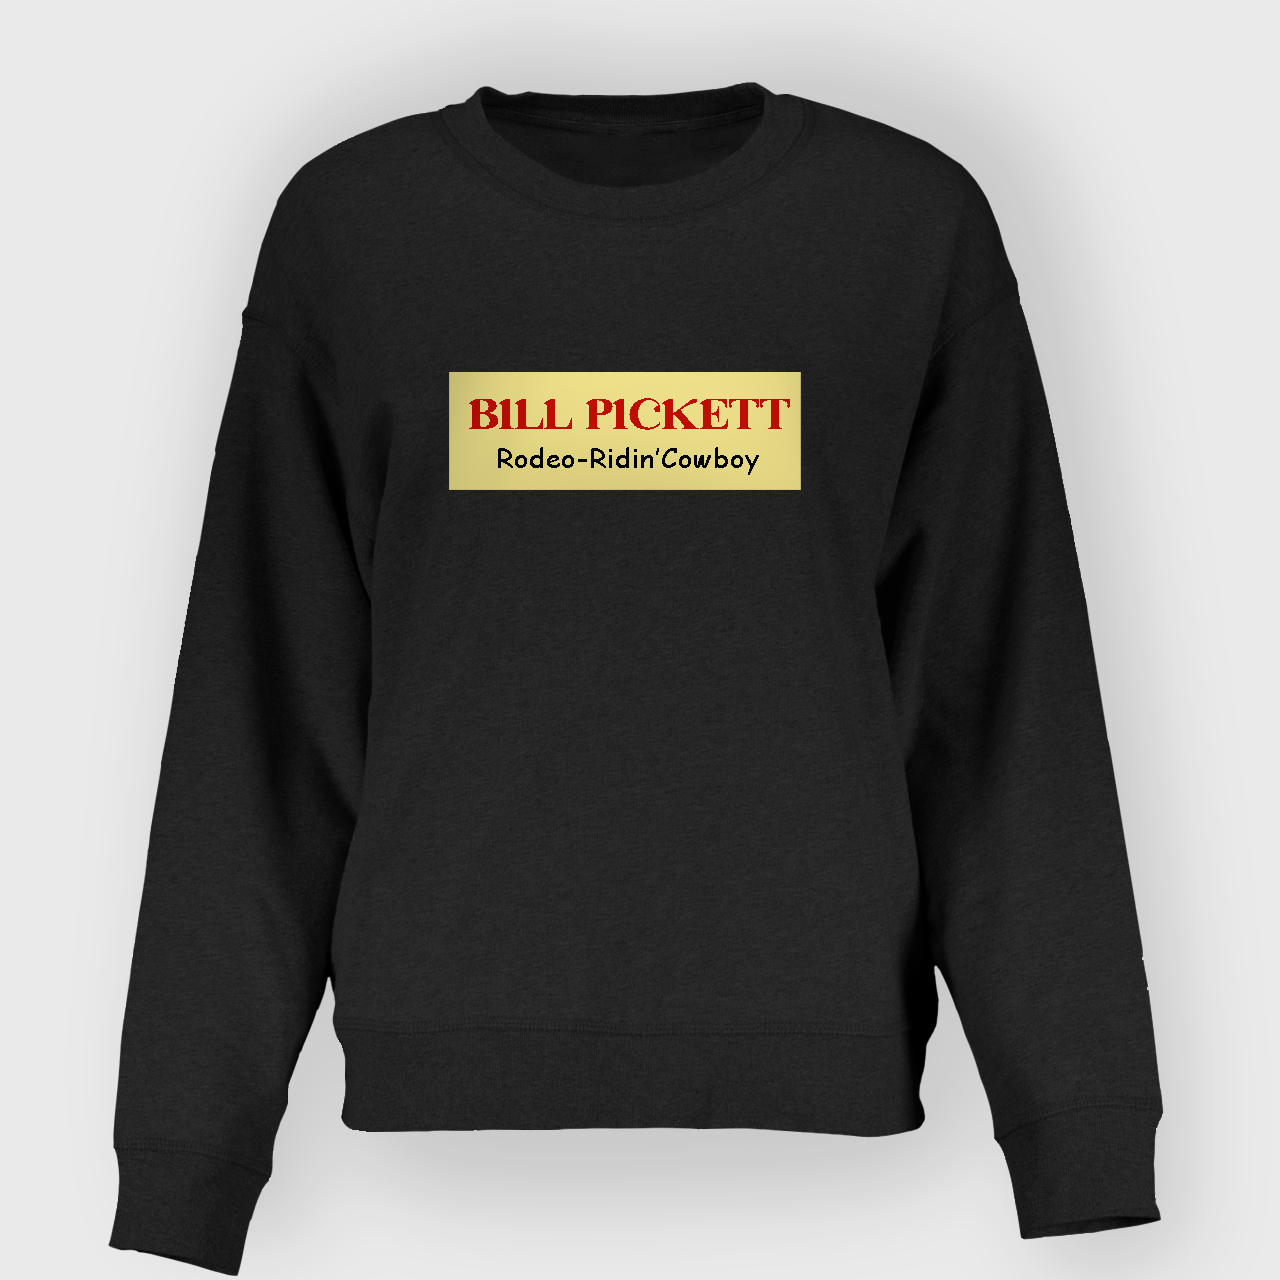 BILL PICKETT: RODEO-RIDIN' COWBOY Sweatshirt